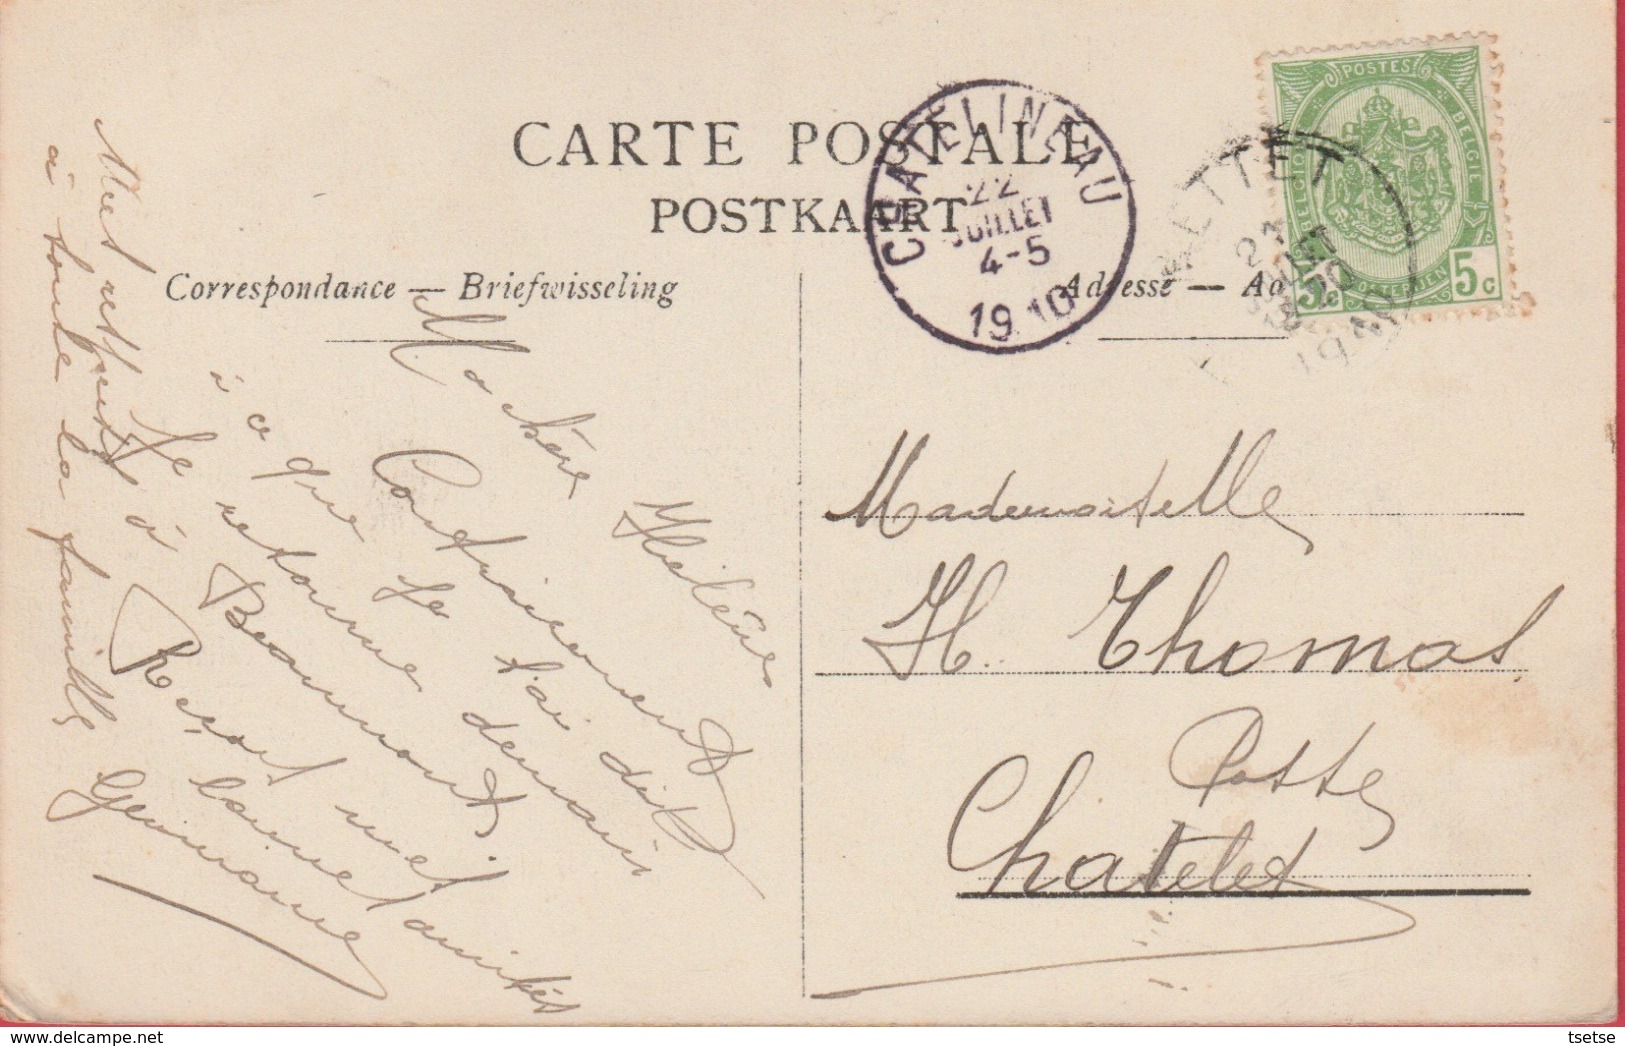 Mettet - Route De Devant-les-Bois - 1910 ( Voir Verso ) - Mettet